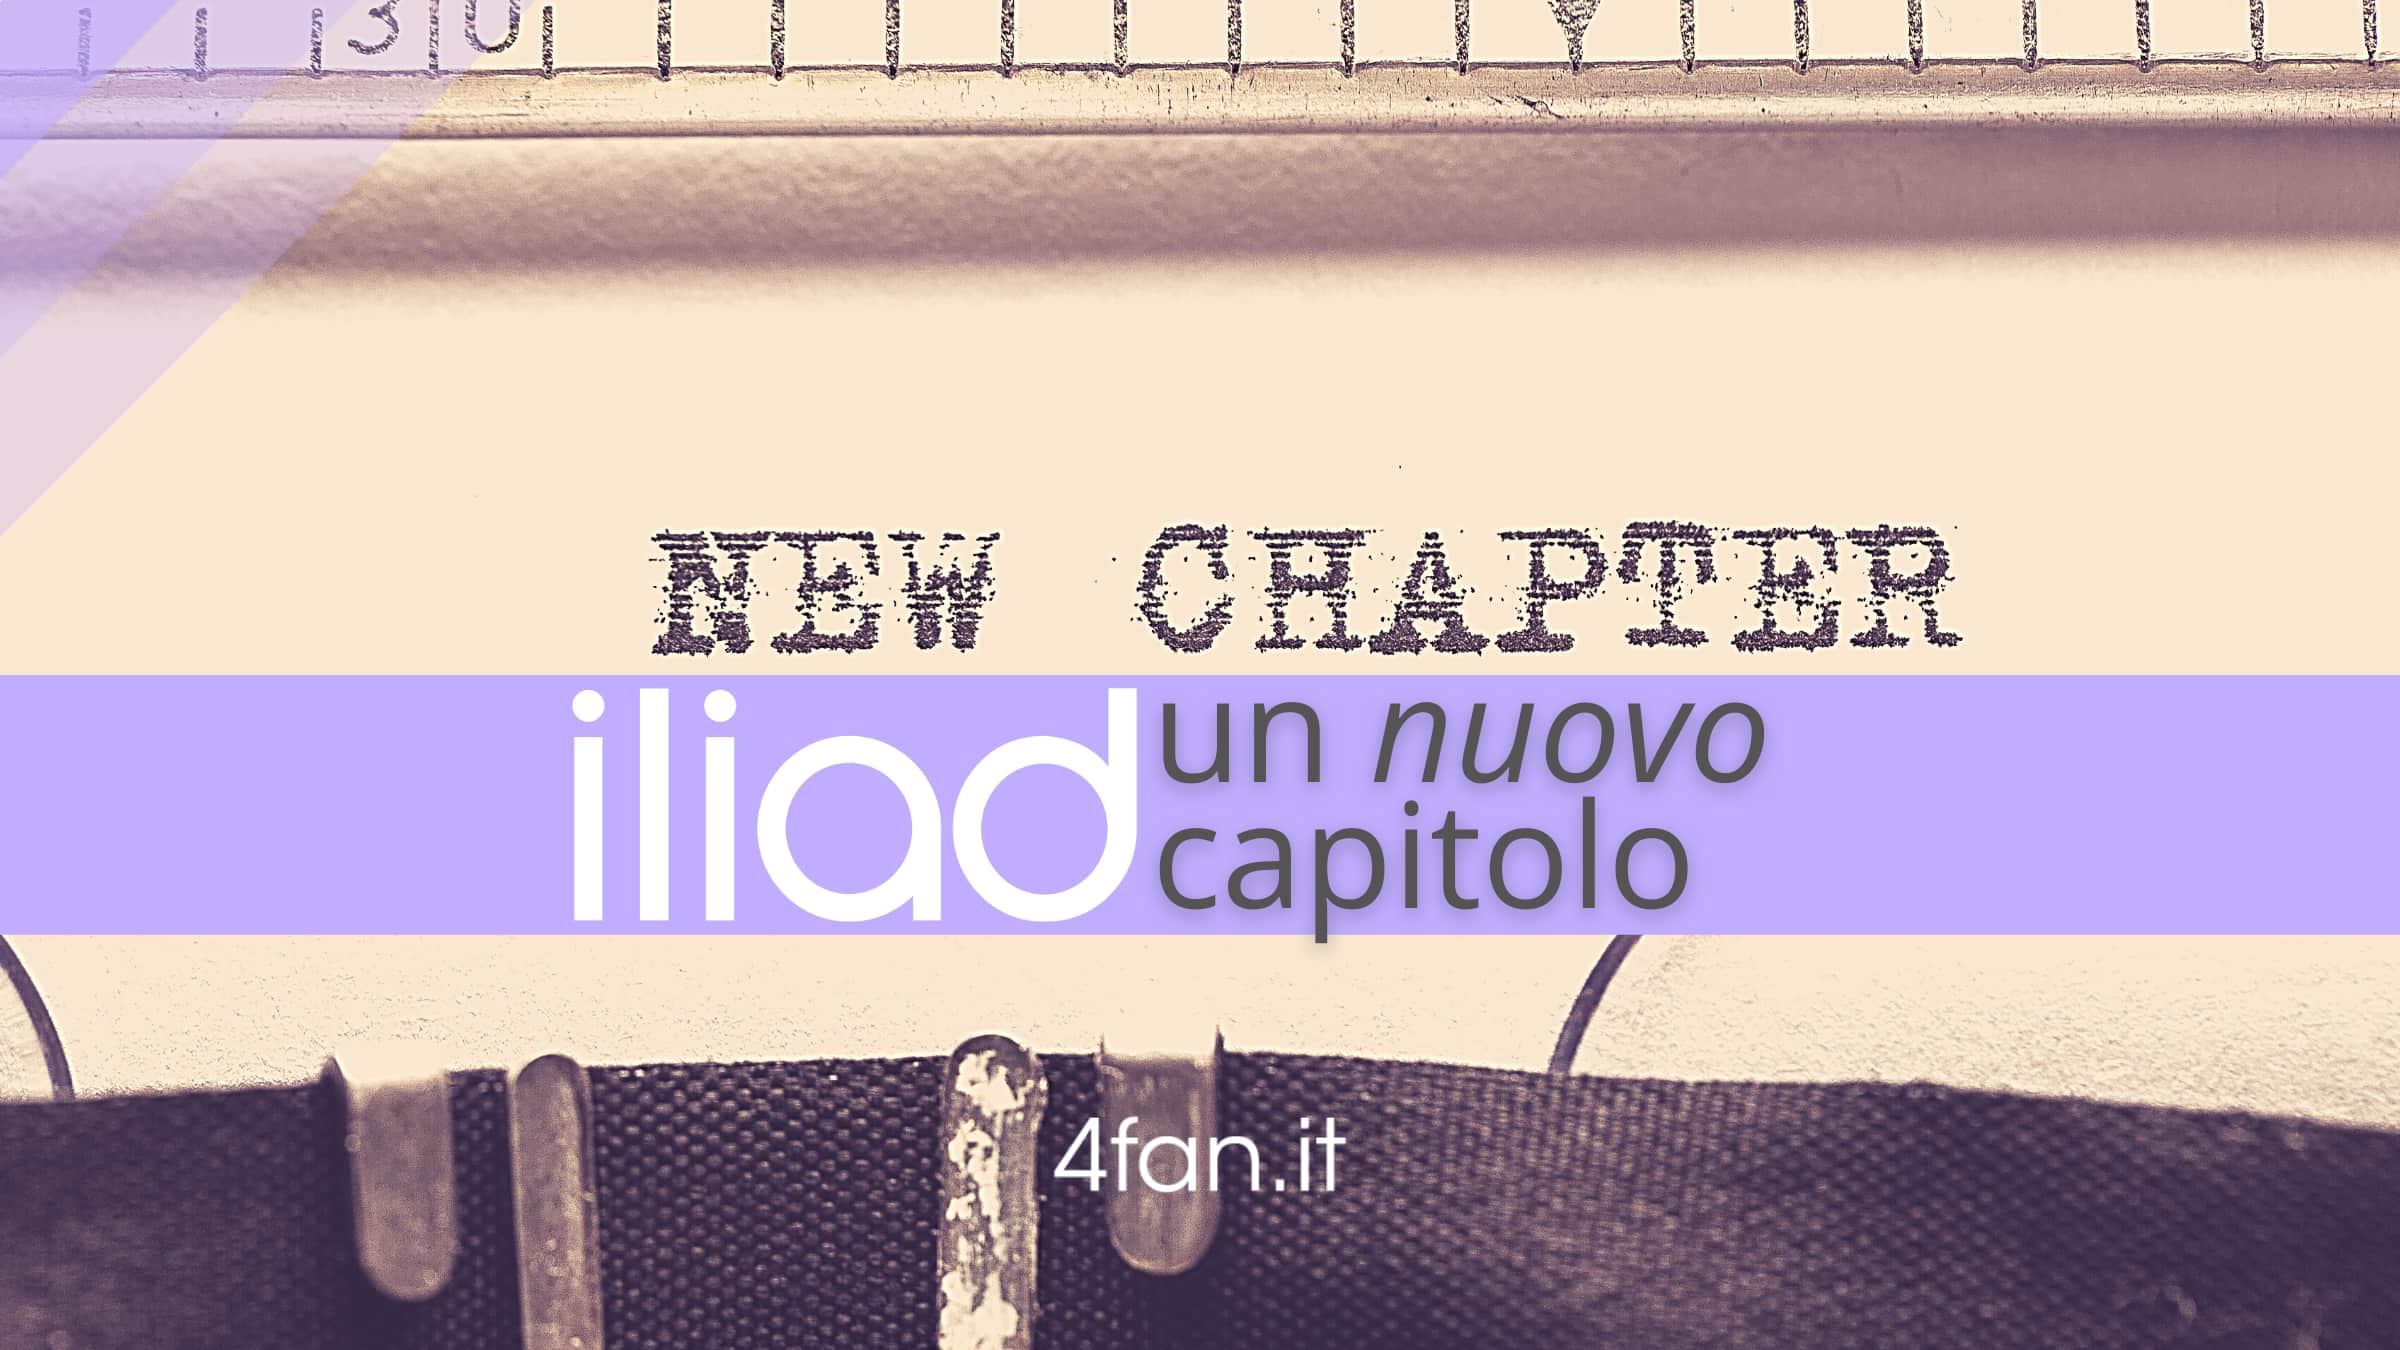 Nuovo Capitolo Iliad